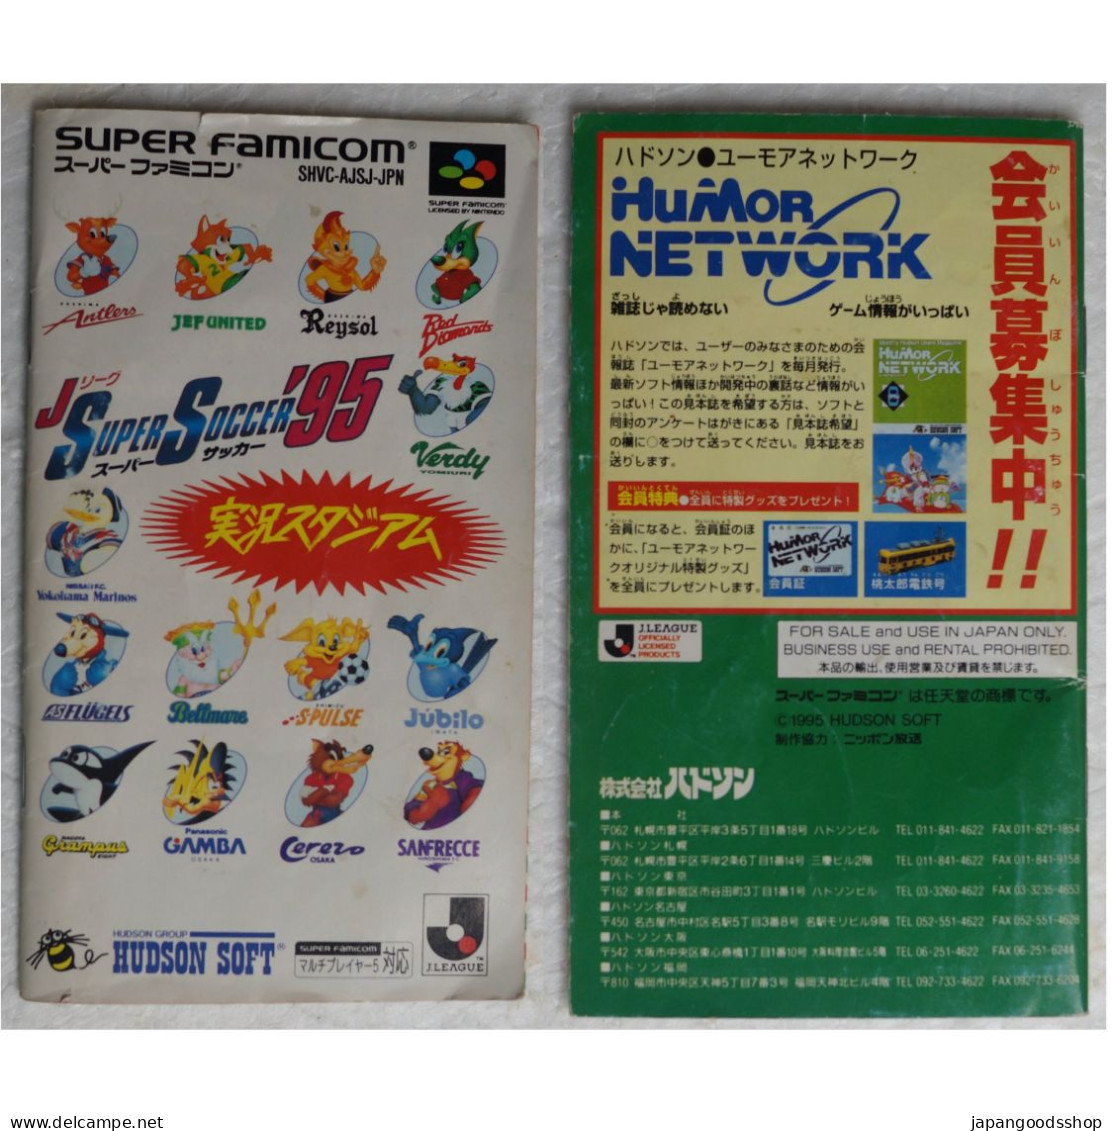 Super Famicom J League Super Soccer '95 SHVC-AJSJ - Super Famicom